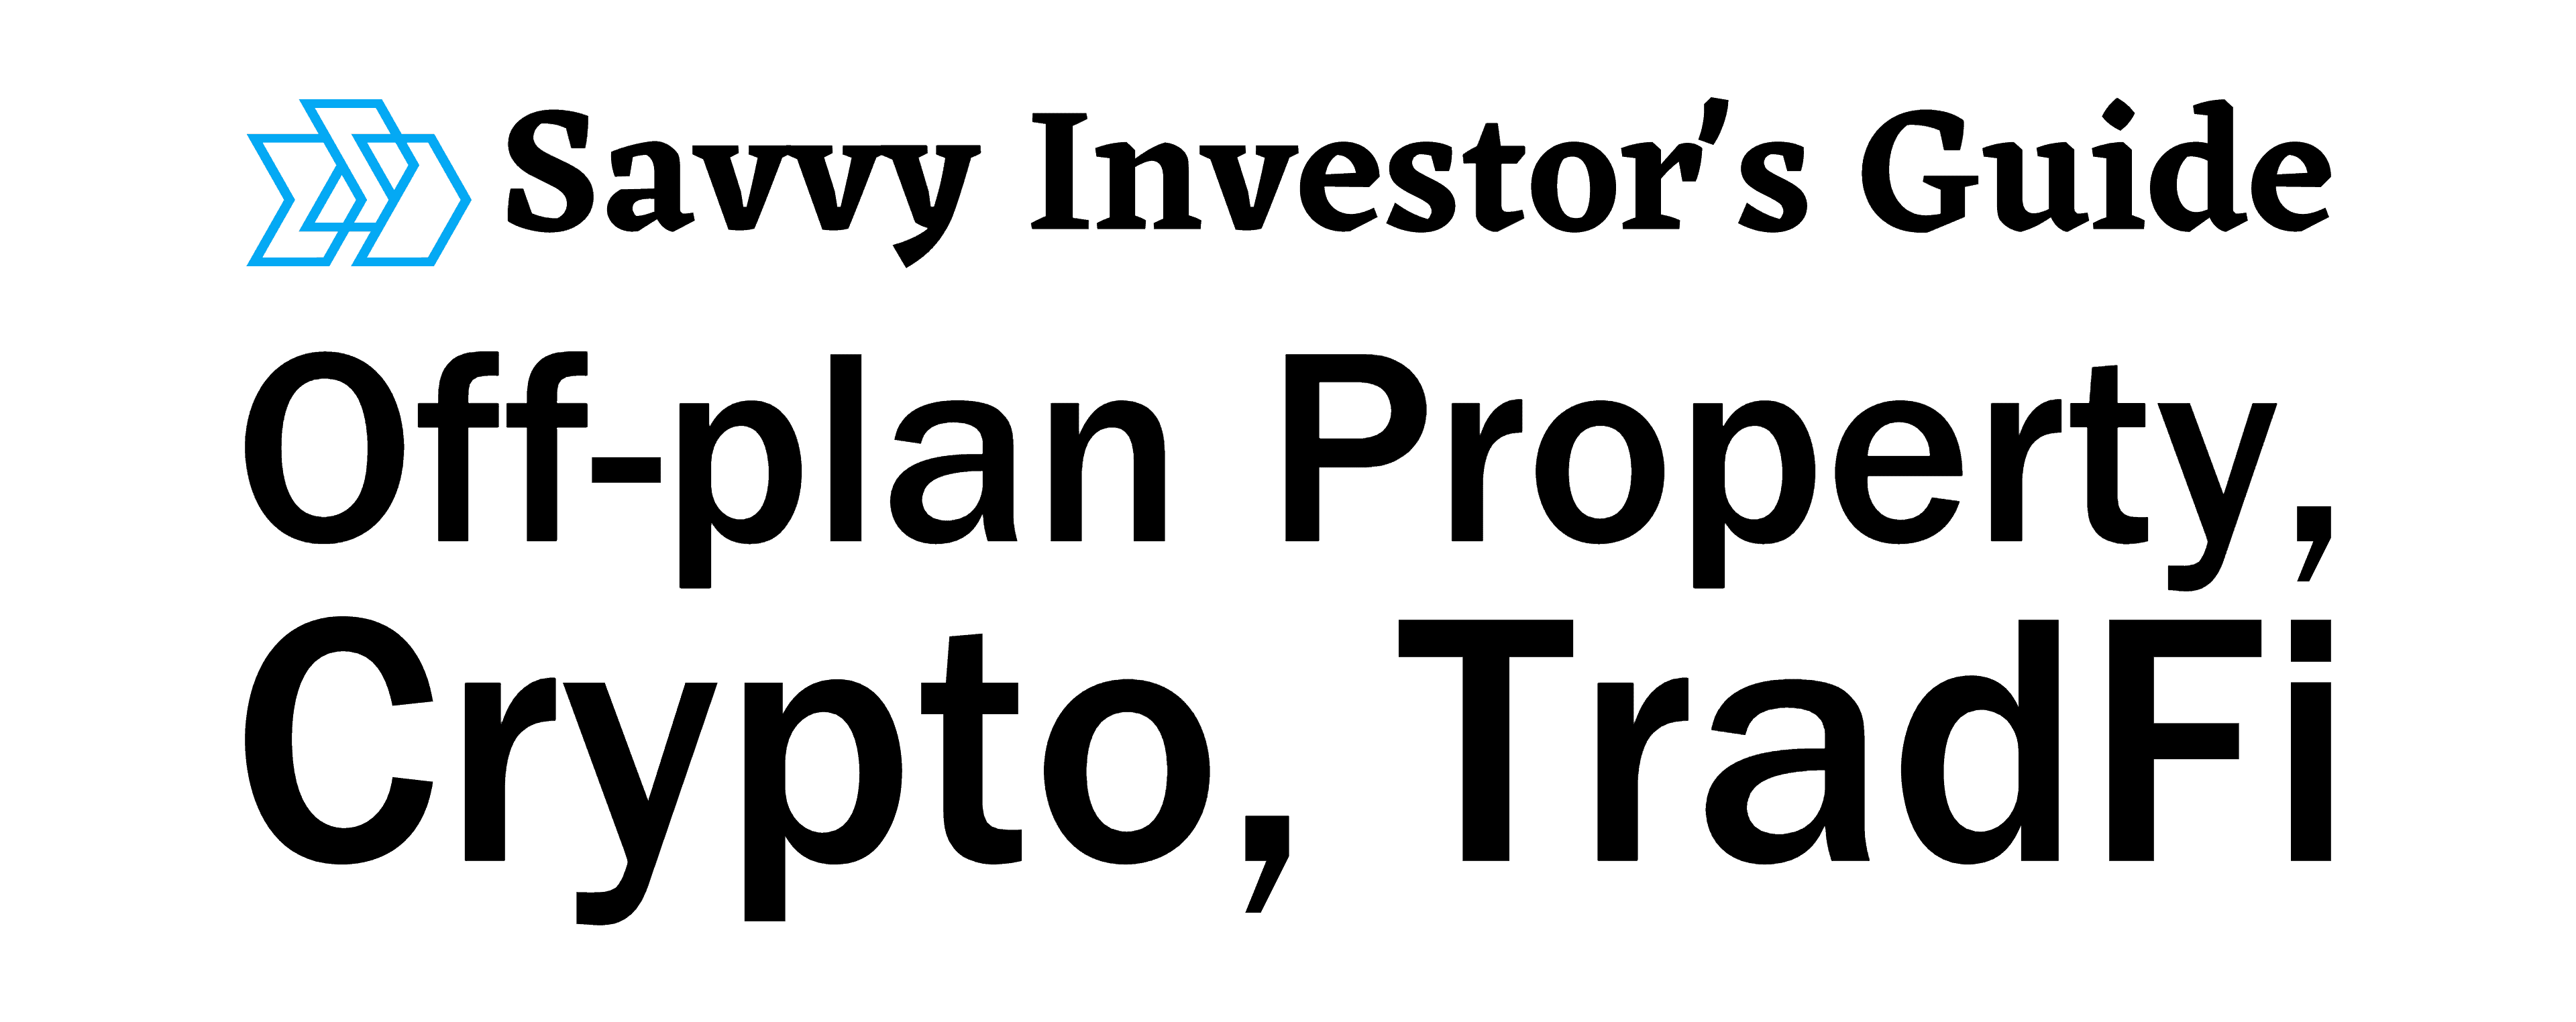 (c) Savvyinvestorguide.com